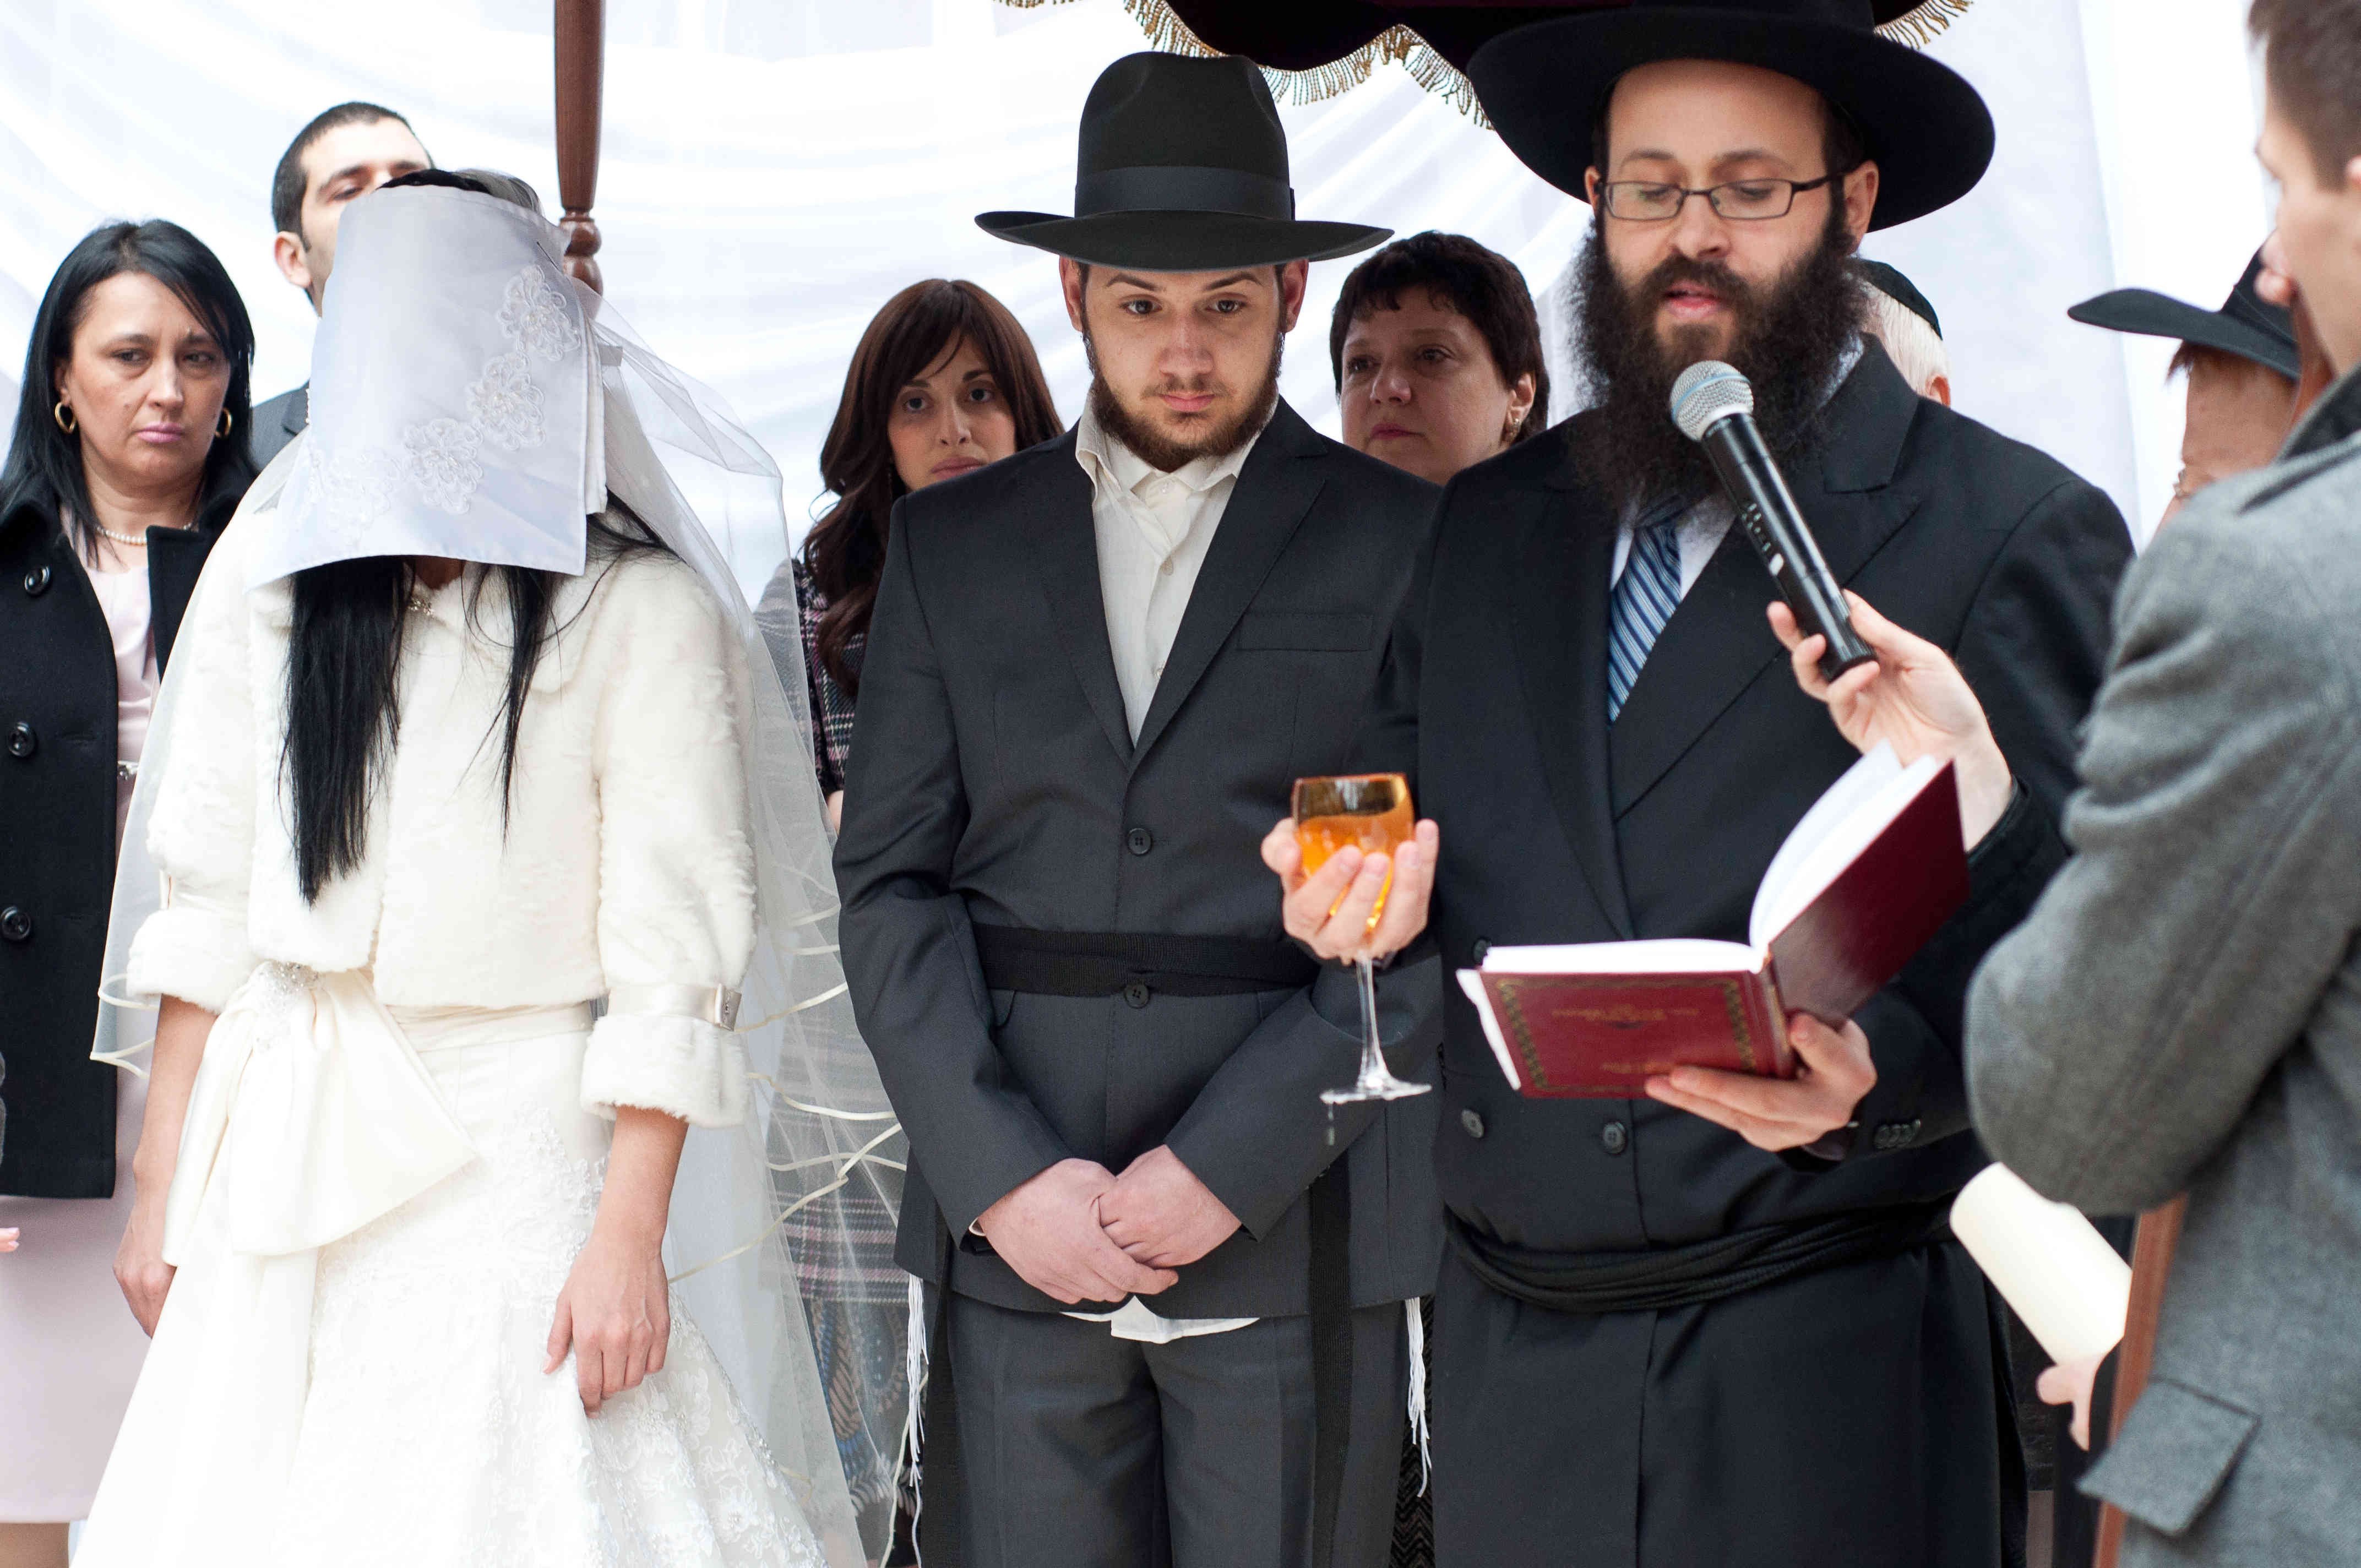 Еврейская национальная область. Ортодоксальная Еврейская свадьба. Еврейская свадьба под хупой. Одежда ортодоксов в Израиле.